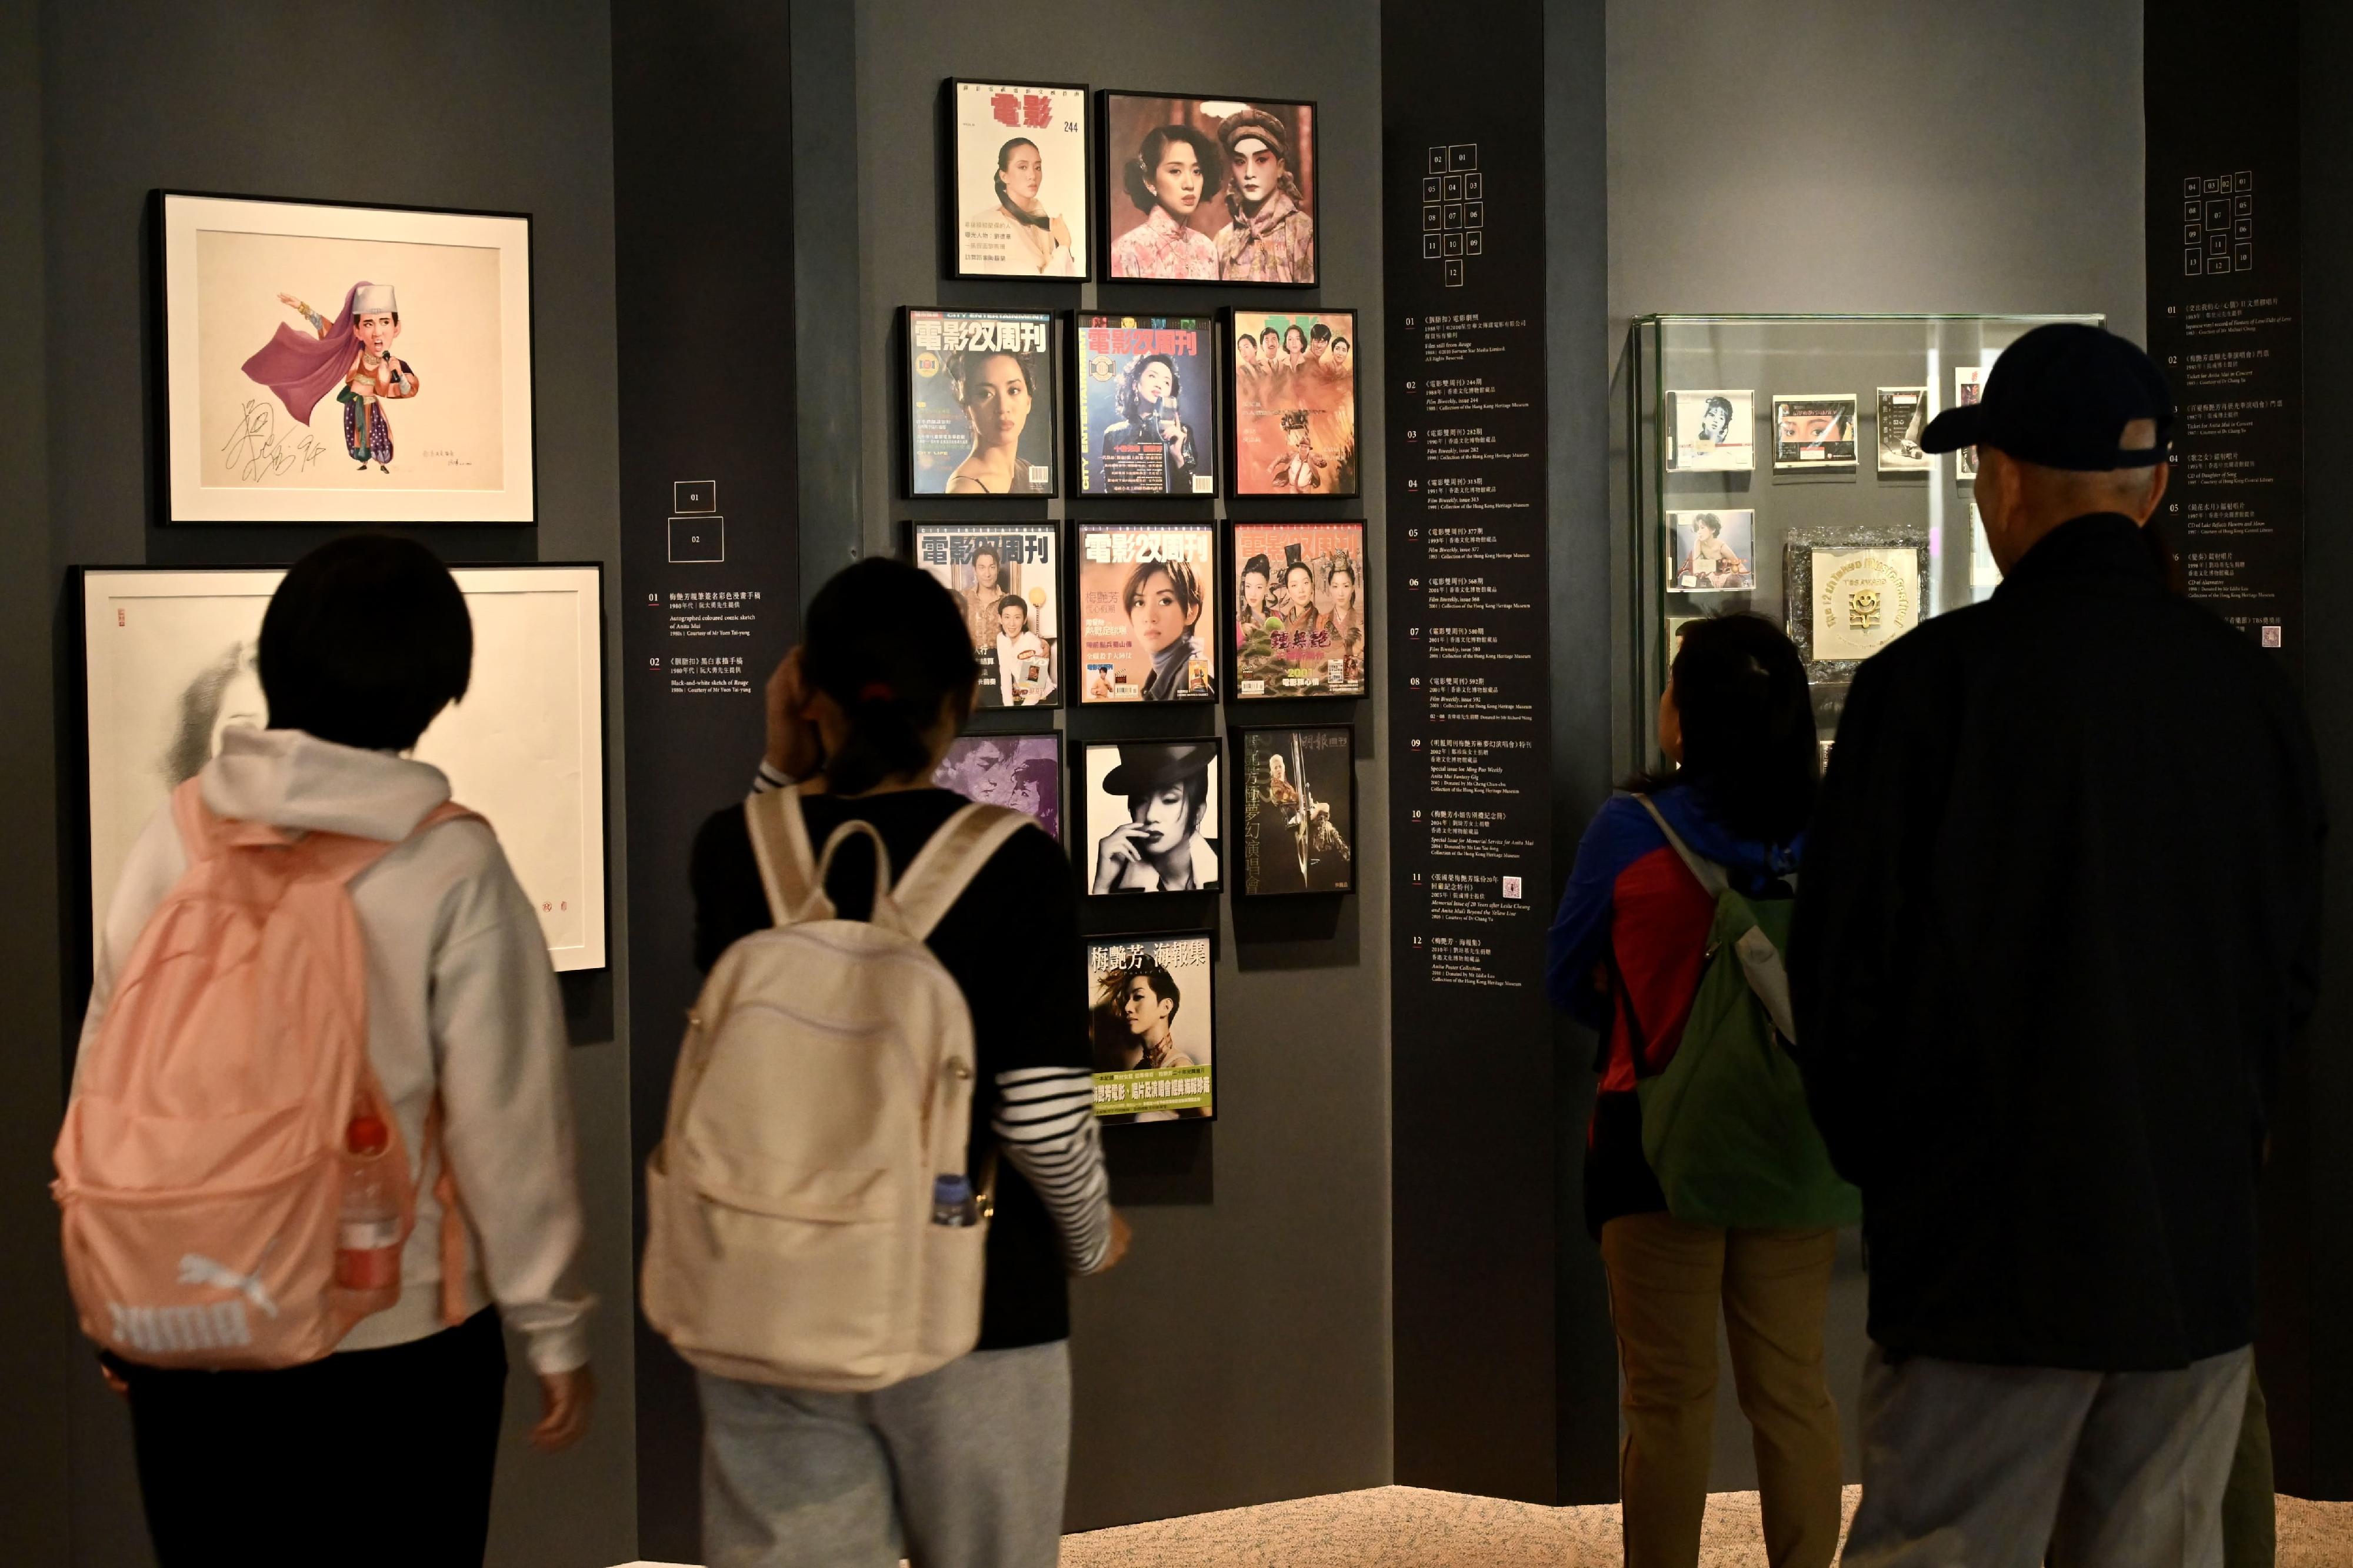 康樂及文化事務署轄下的香港文化博物館現正舉行的「絕代芳華・梅艷芳」展覽亦獲得市民支持，自去年十二月二十四日開展至昨日（三月六日），已有10萬人次前來參觀。圖示市民參觀展覽。